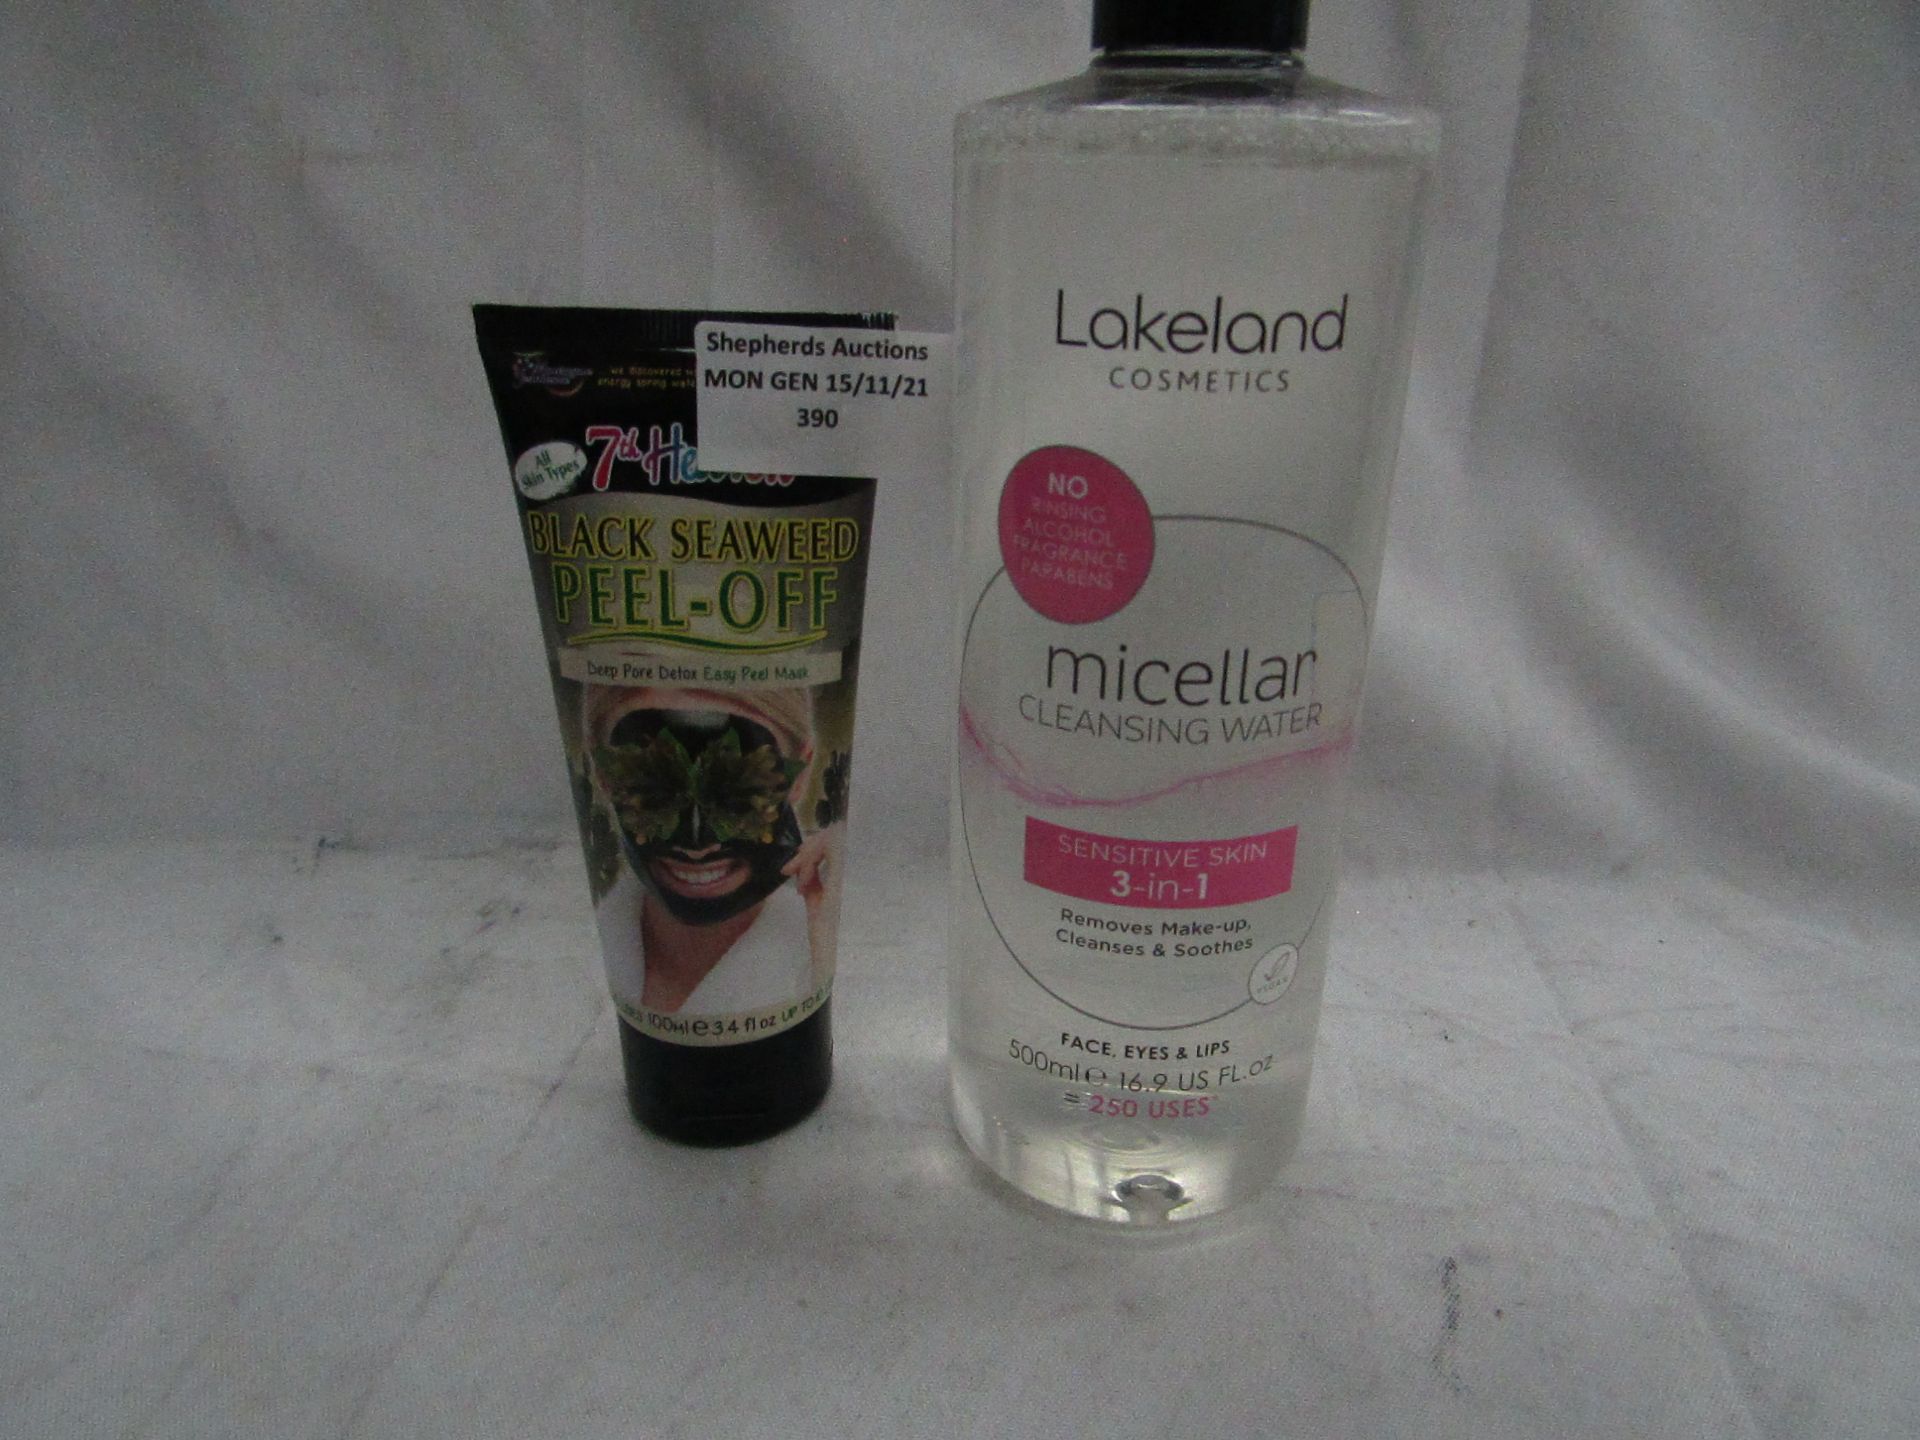 7th Heaven - Black Seaweed Peel-Off Mask 100ml - Unused. 1x Lakeland Cosmetics - Micellar